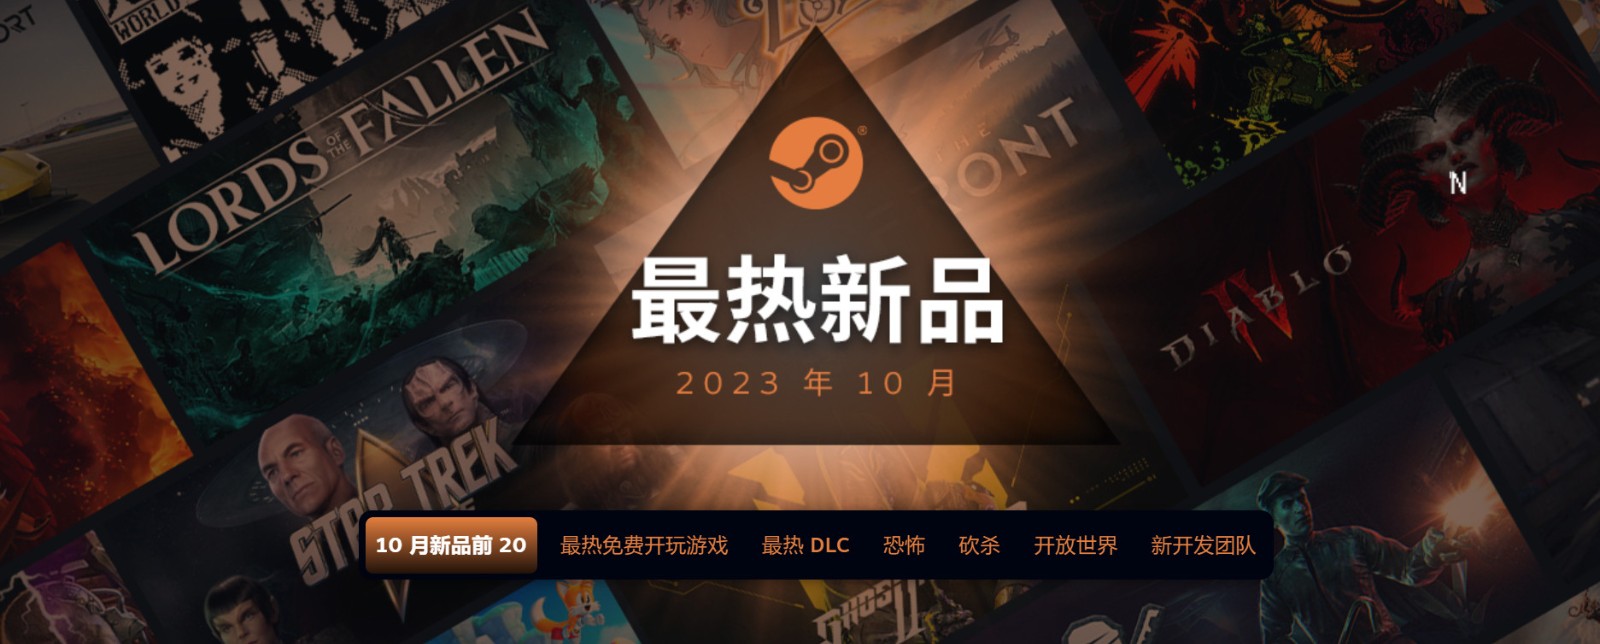 2023年10月Steam最熱新品 《暗黑4》《墮落之主》等上榜